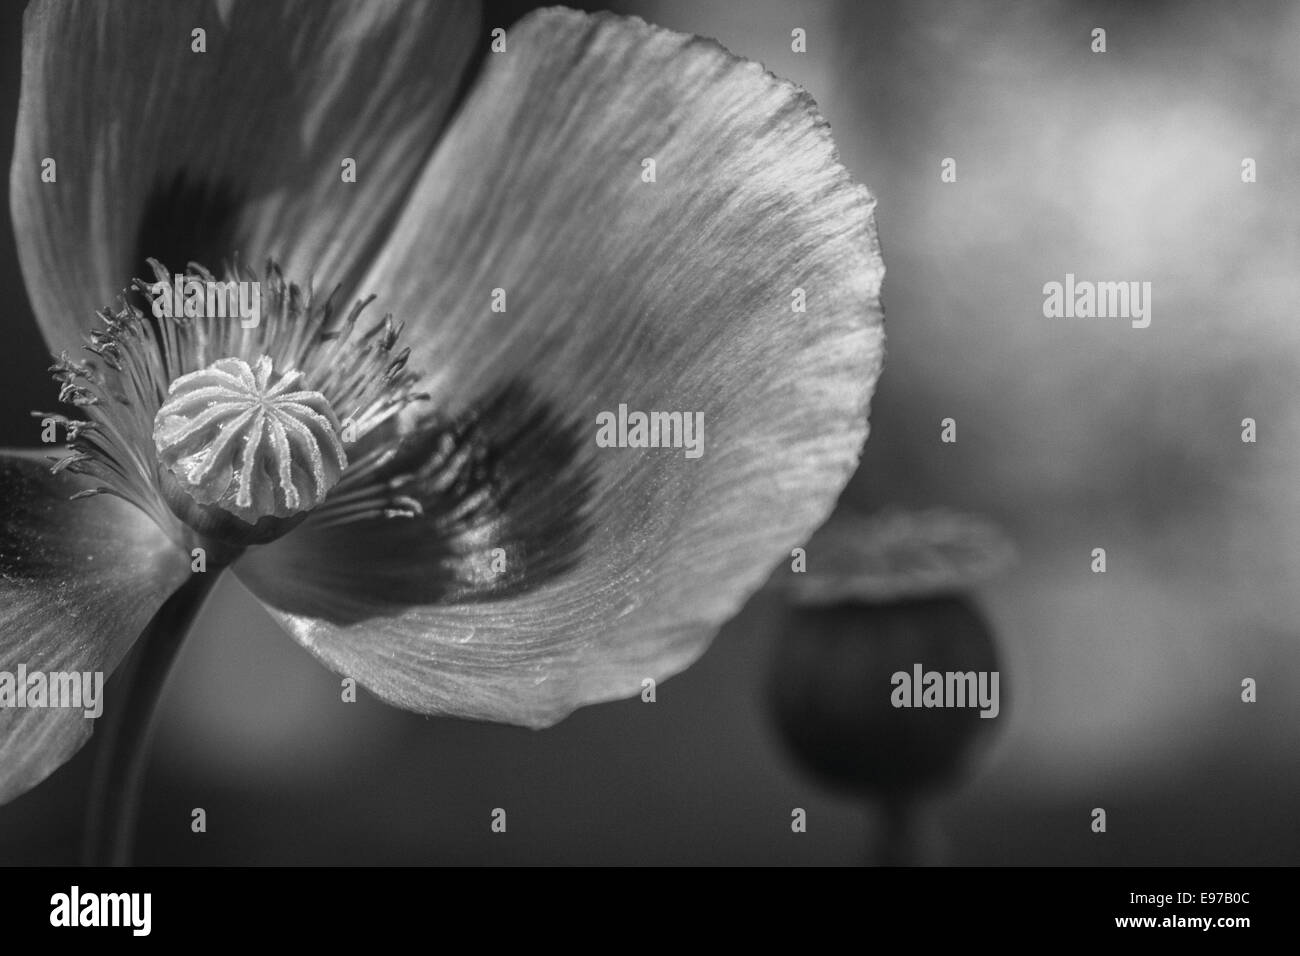 Immagine in bianco e nero di un papavero fiore con un seme pod in background Foto Stock